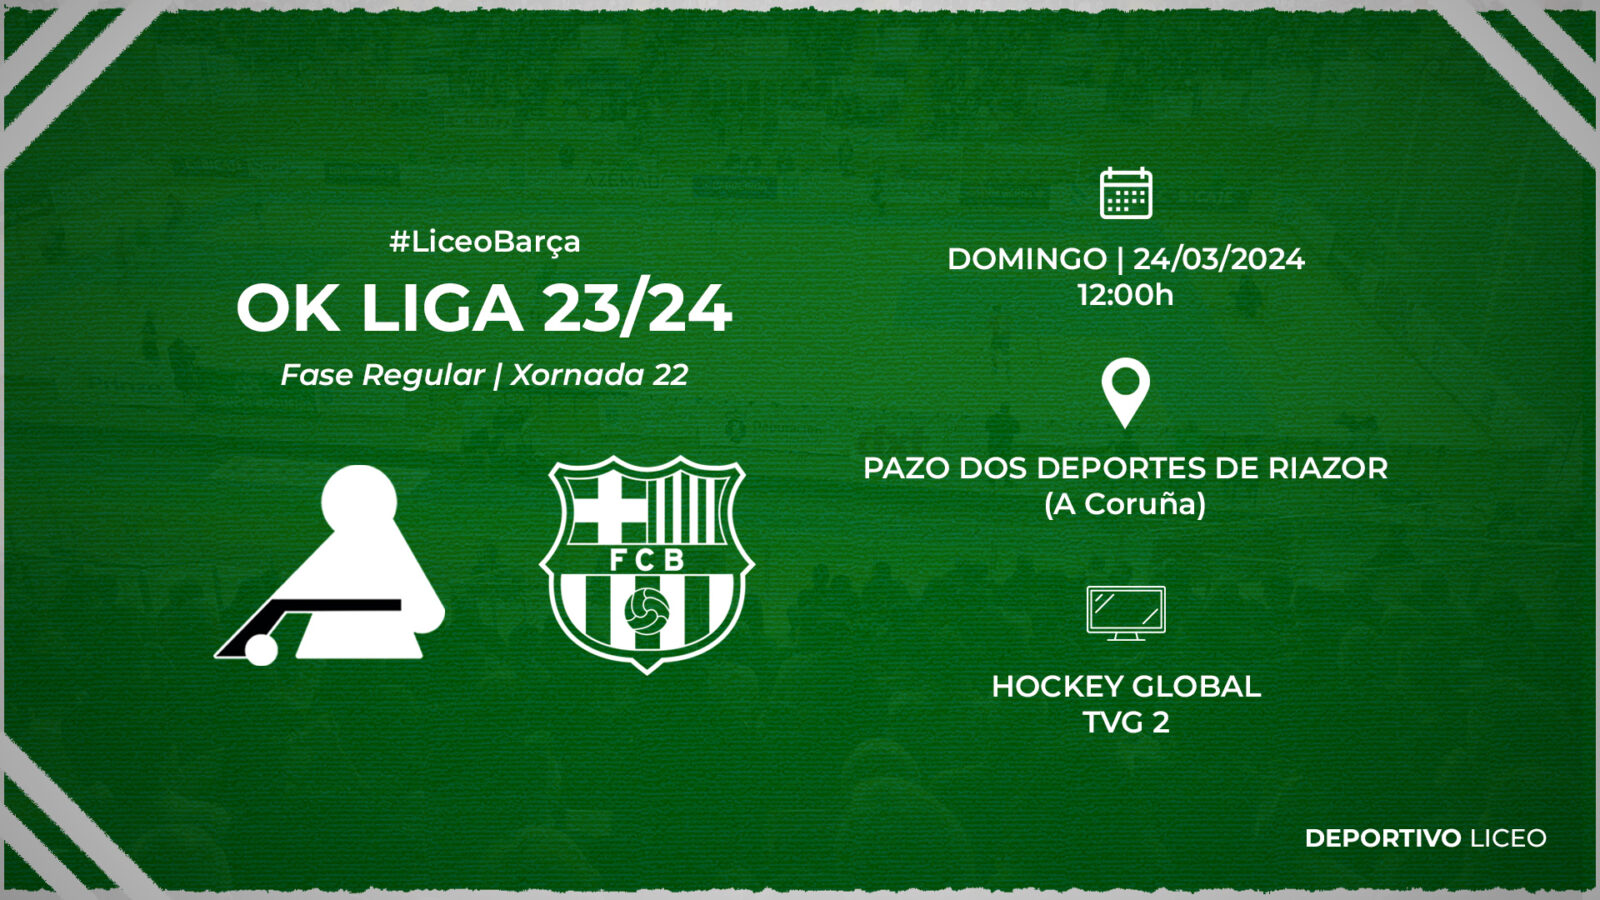 #LiceoBarça | ENTRADAS para la jornada 22 de la OK Liga 23/24